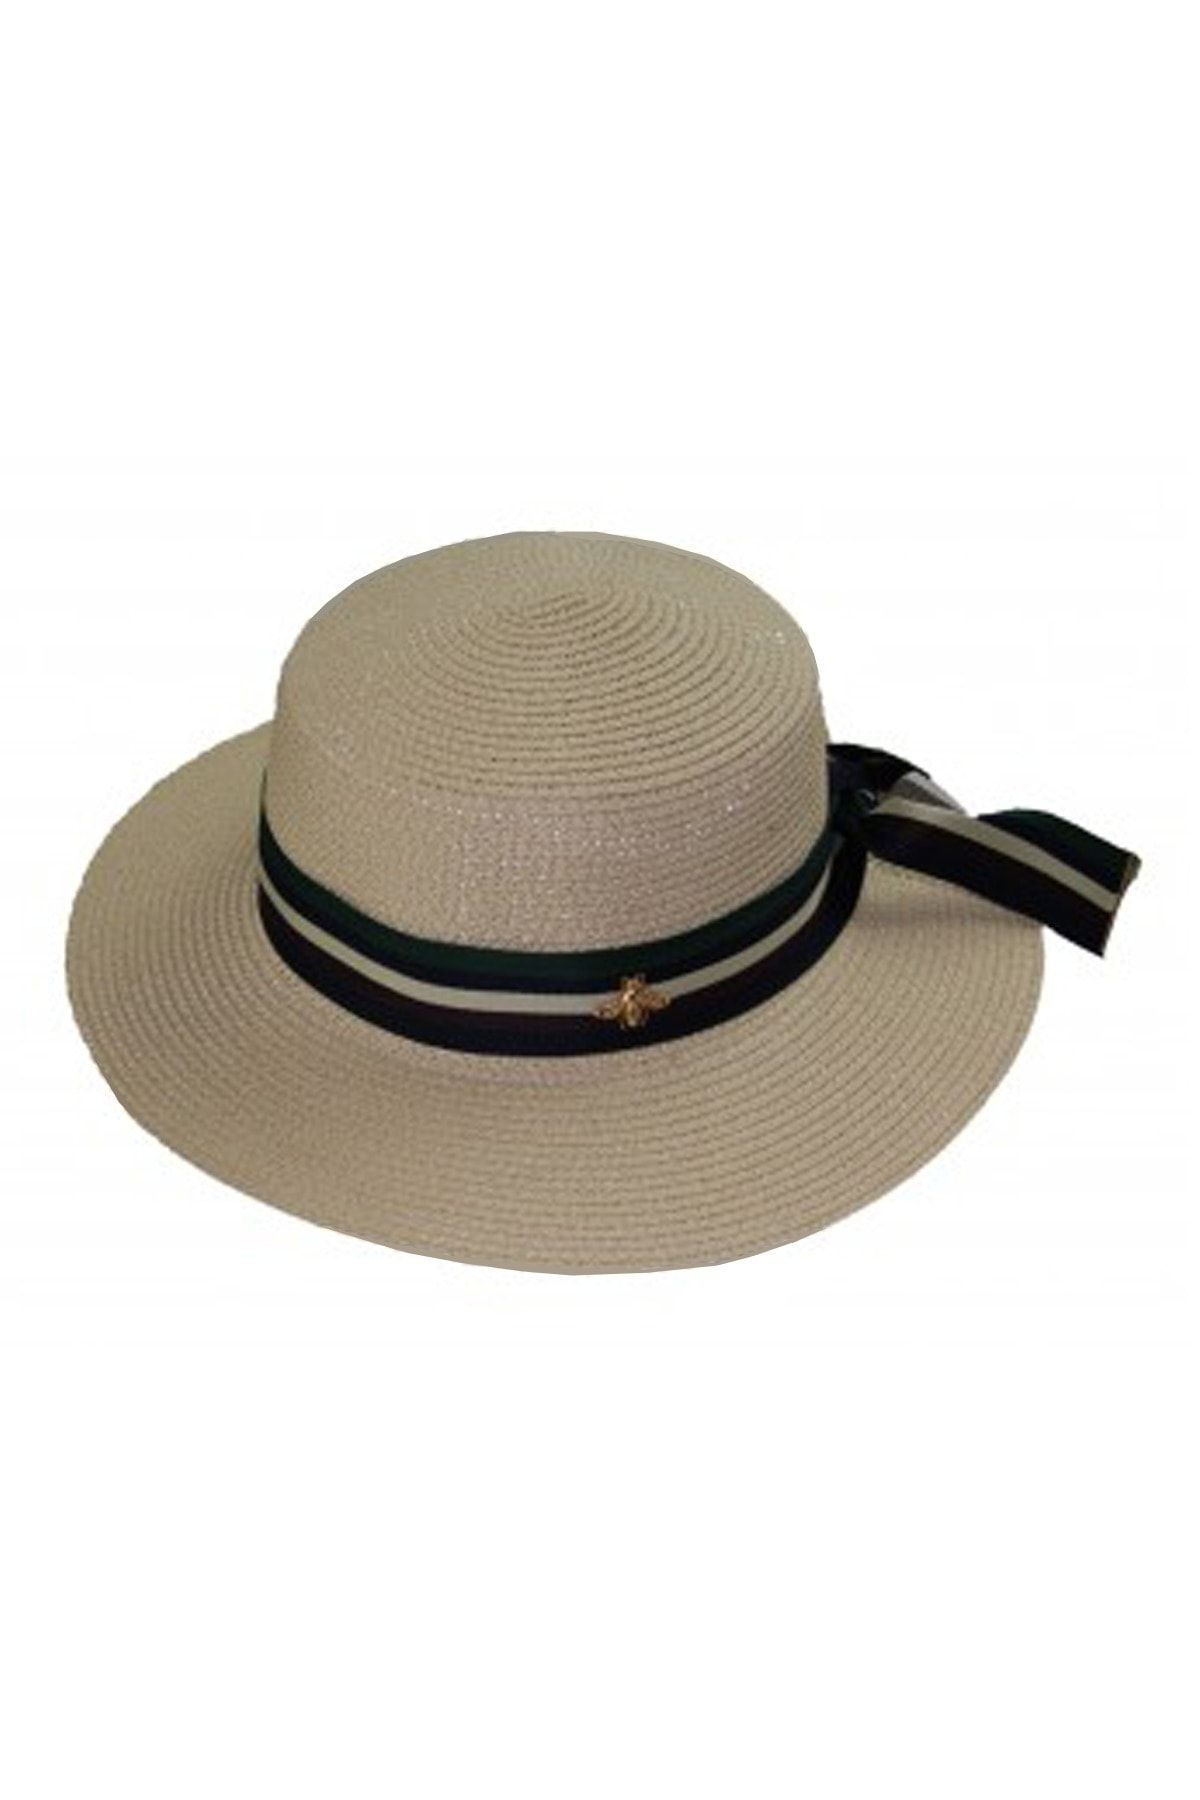 Bay Şapkacı Şeritli Hasır Kadın Şapka 3853